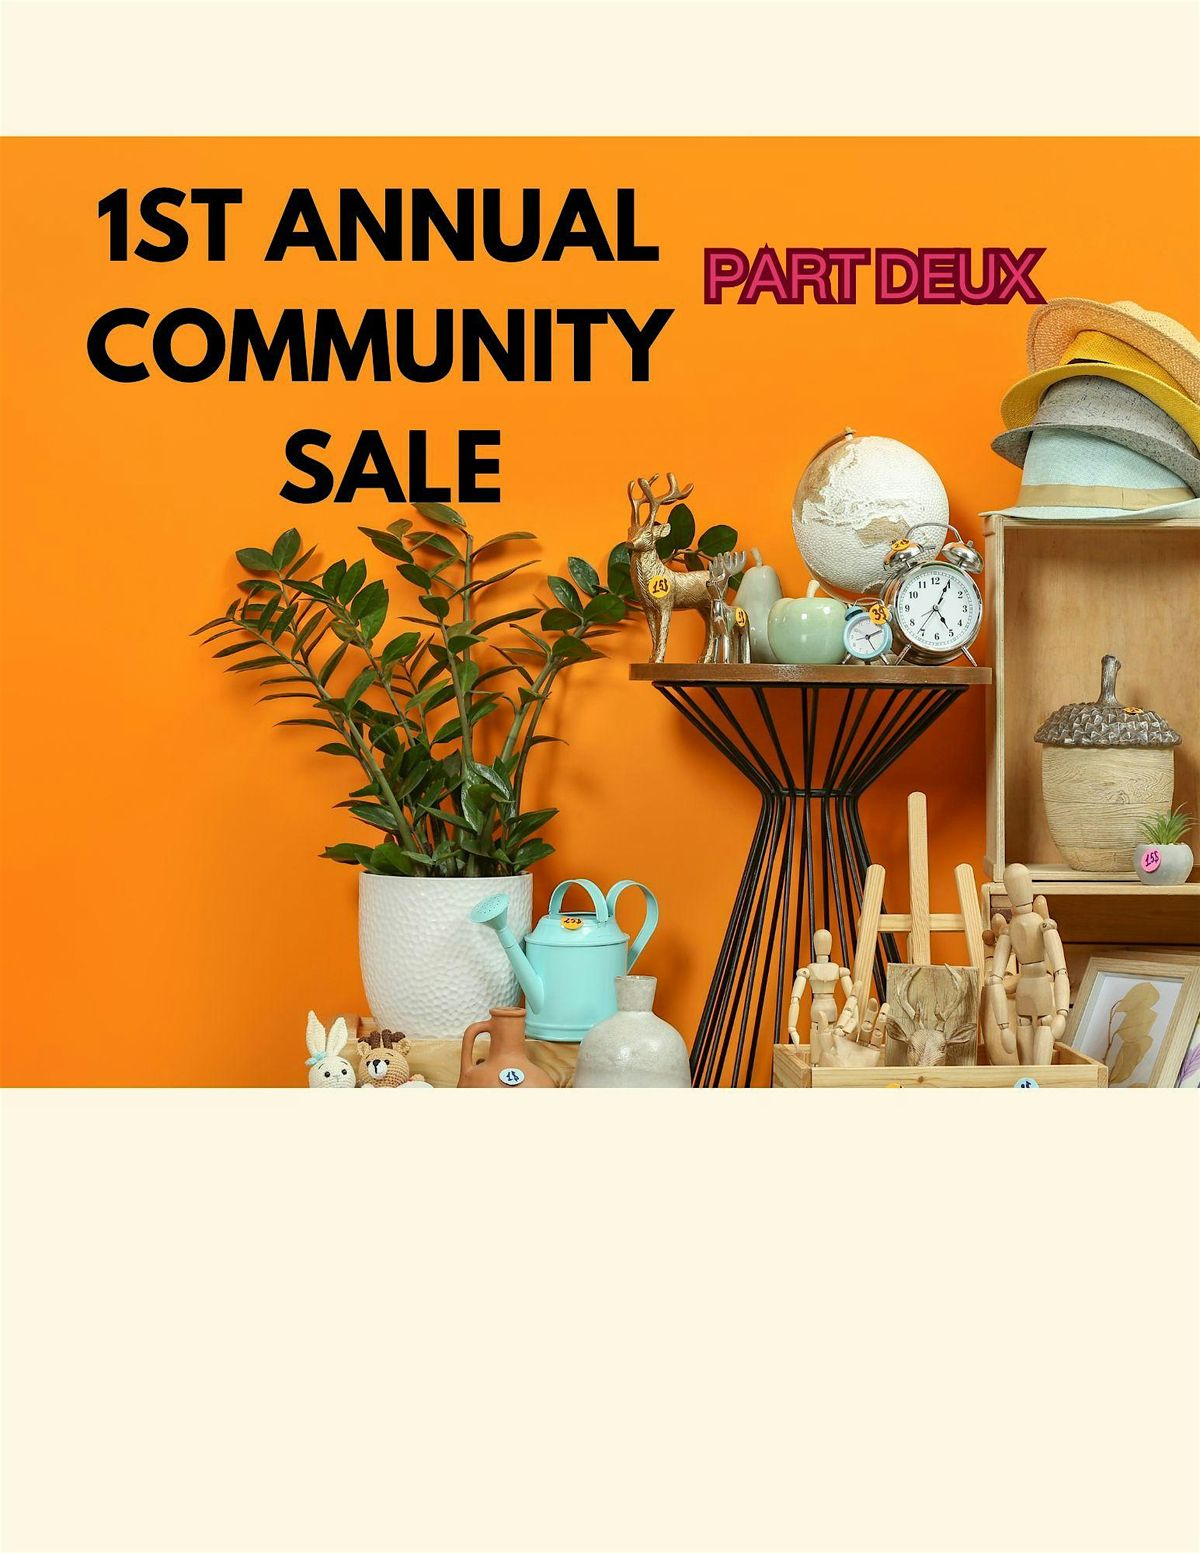 Copy of 1st Annual Community Sale: PART DEUX